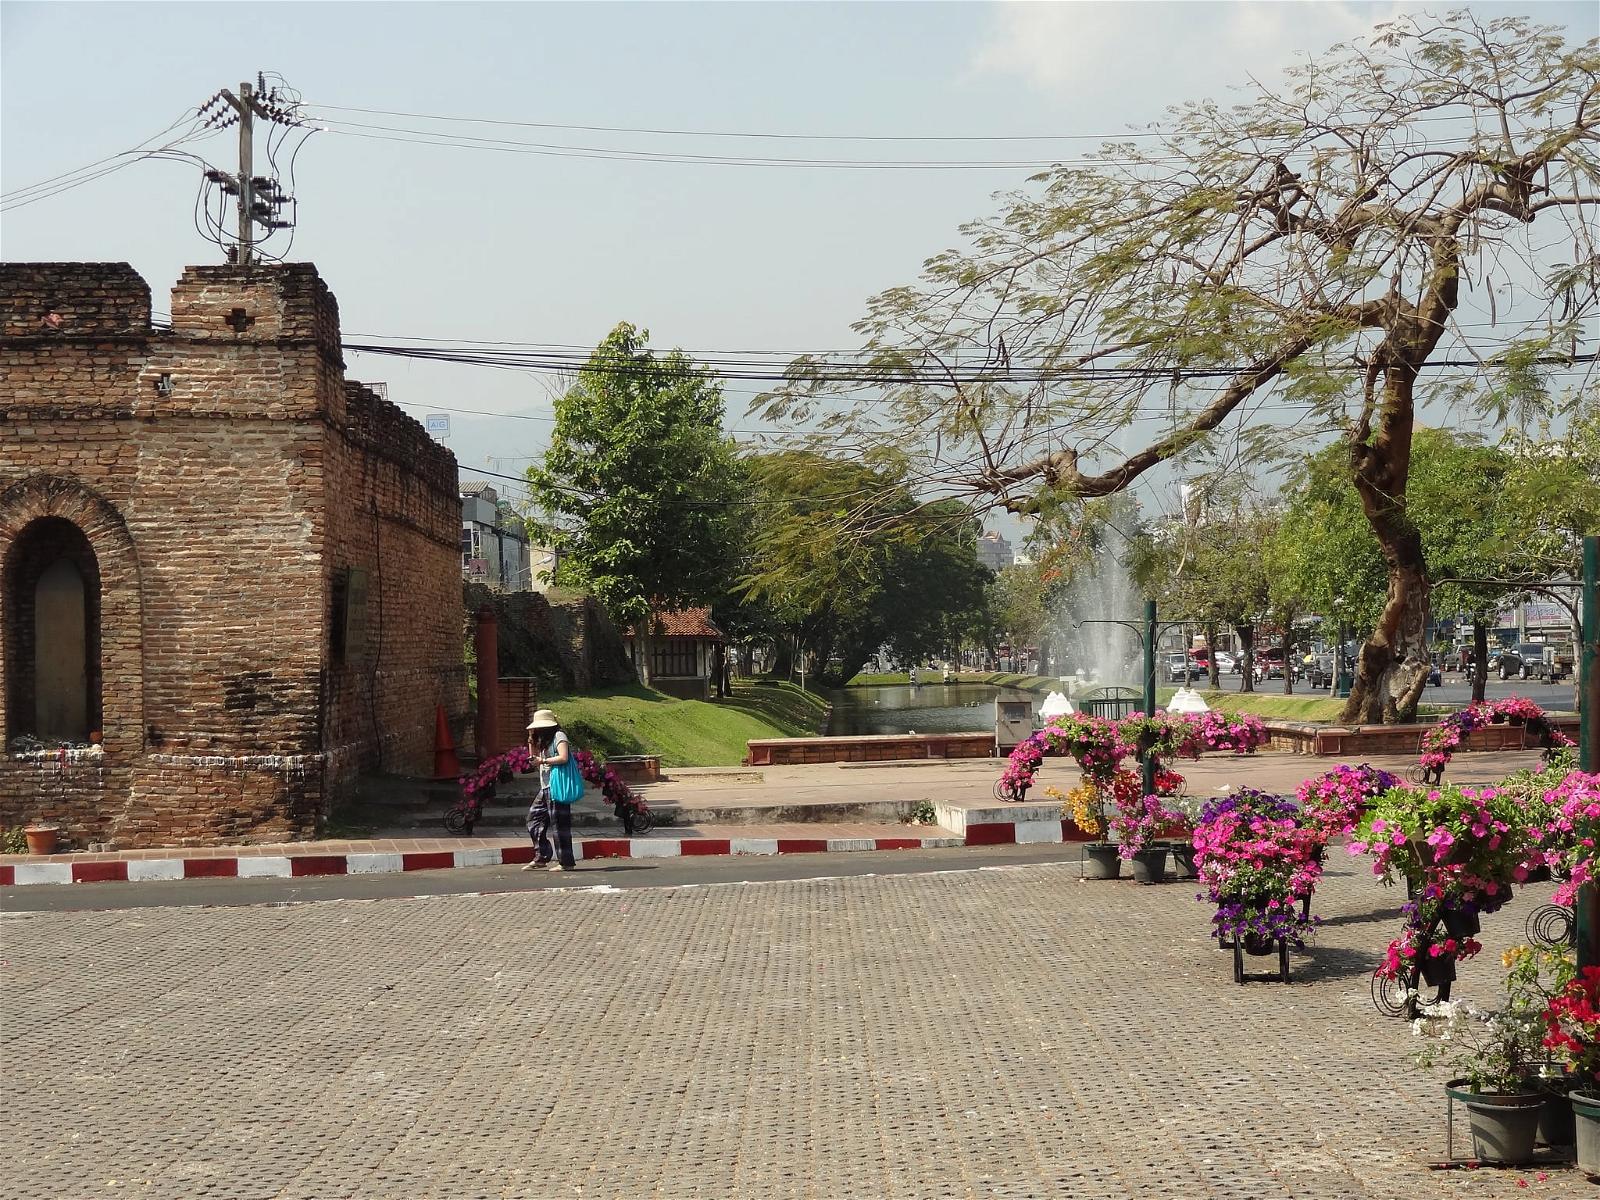 Chang Phuak Gate 의 이미지. 